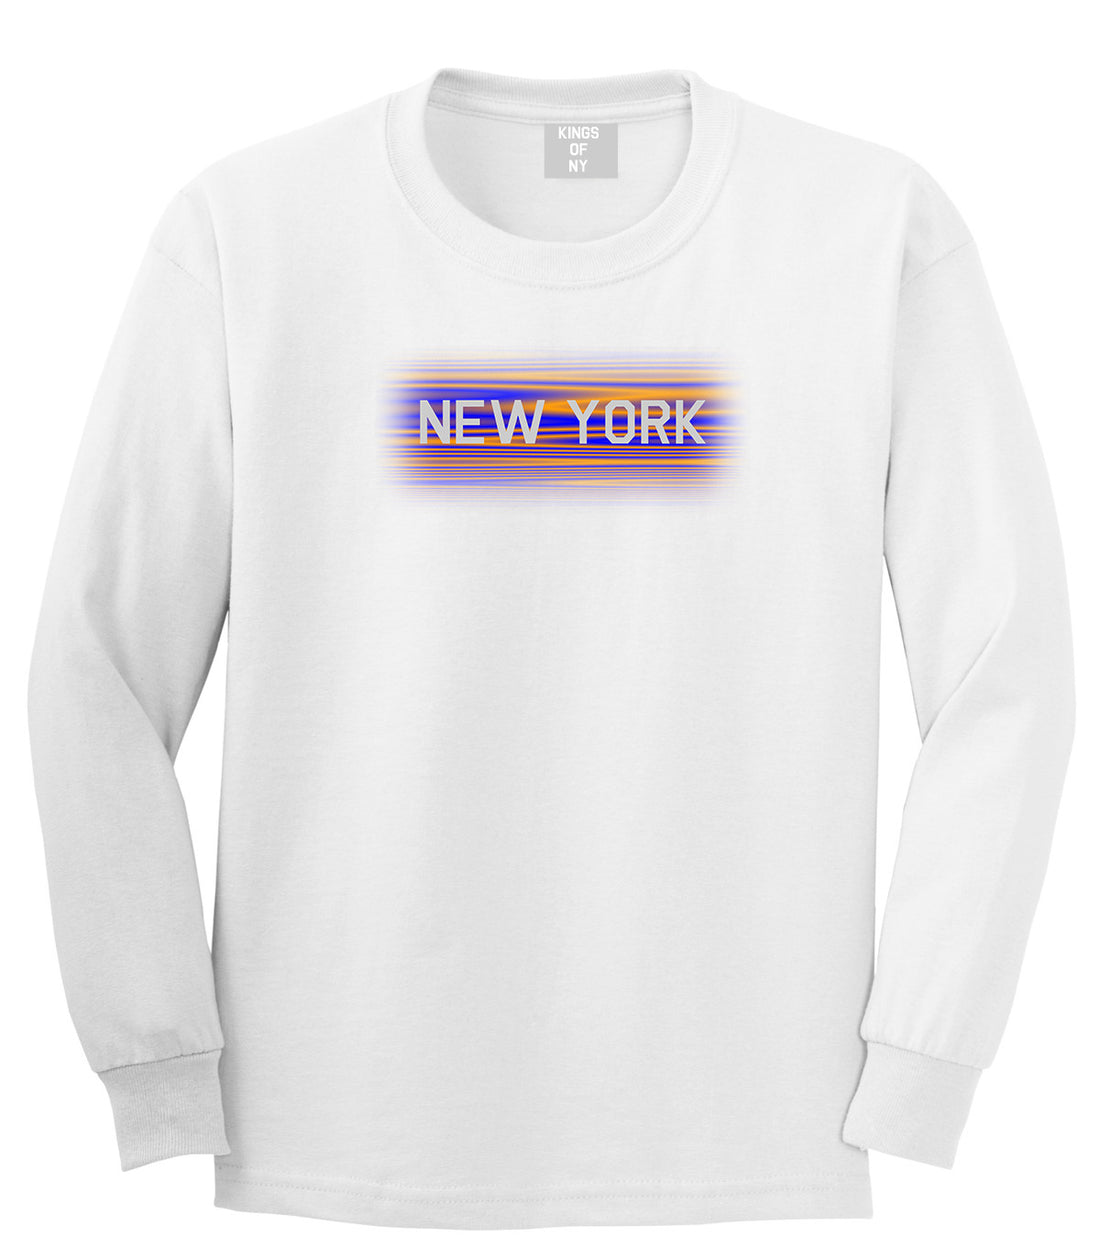 New York Hometeam Long Sleeve T-Shirt in White